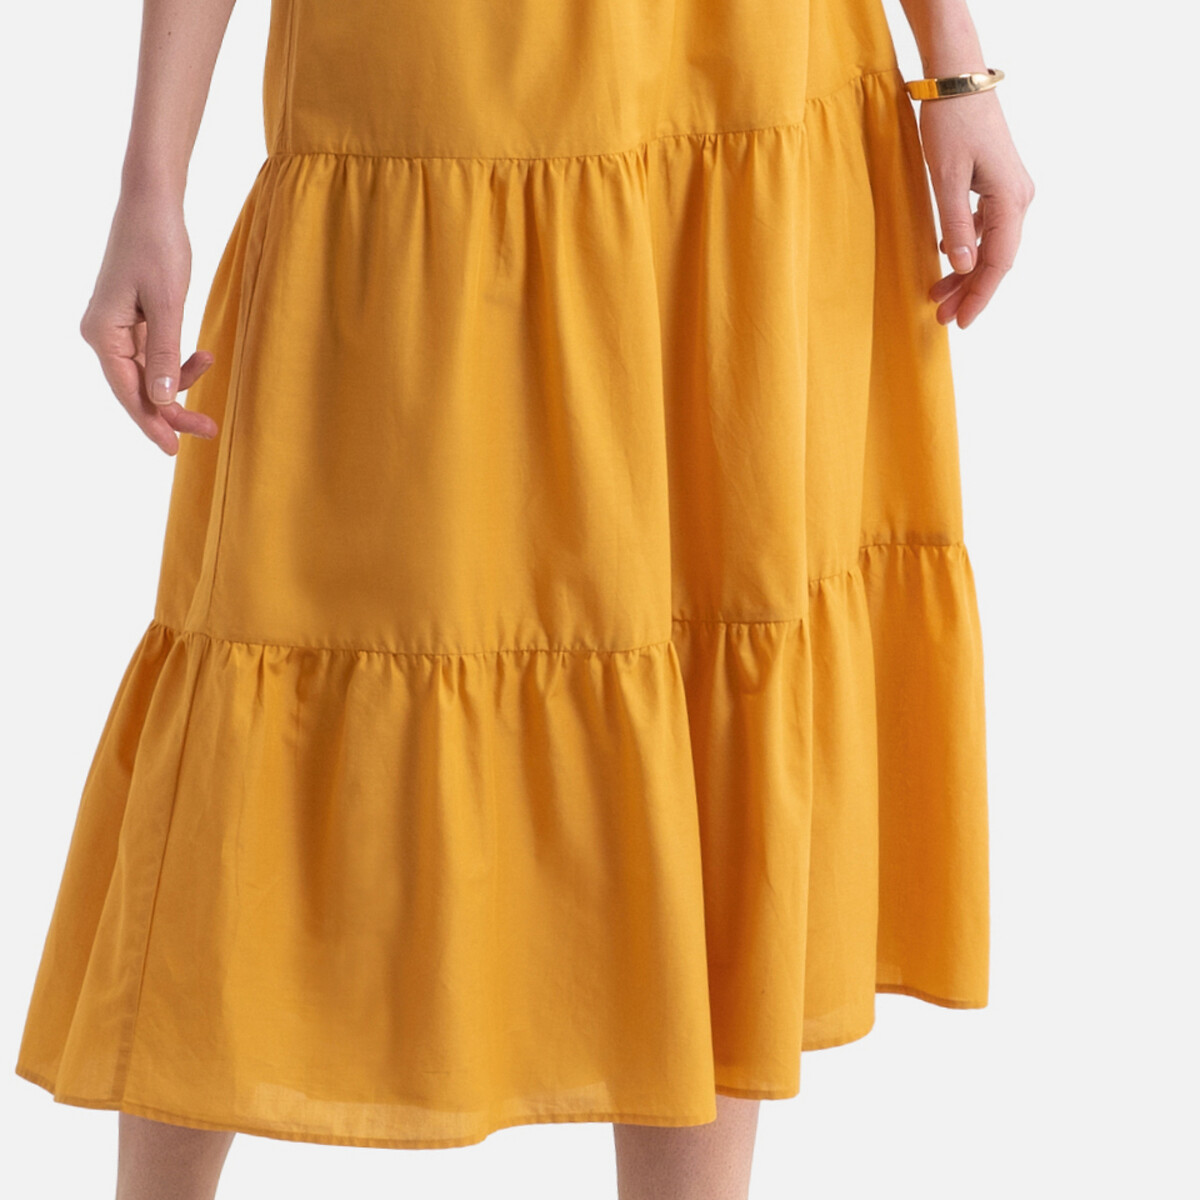 Платье LaRedoute Длинное расклешенное с короткими рукавами 38 (FR) - 44 (RUS) желтый, размер 38 (FR) - 44 (RUS) Длинное расклешенное с короткими рукавами 38 (FR) - 44 (RUS) желтый - фото 3